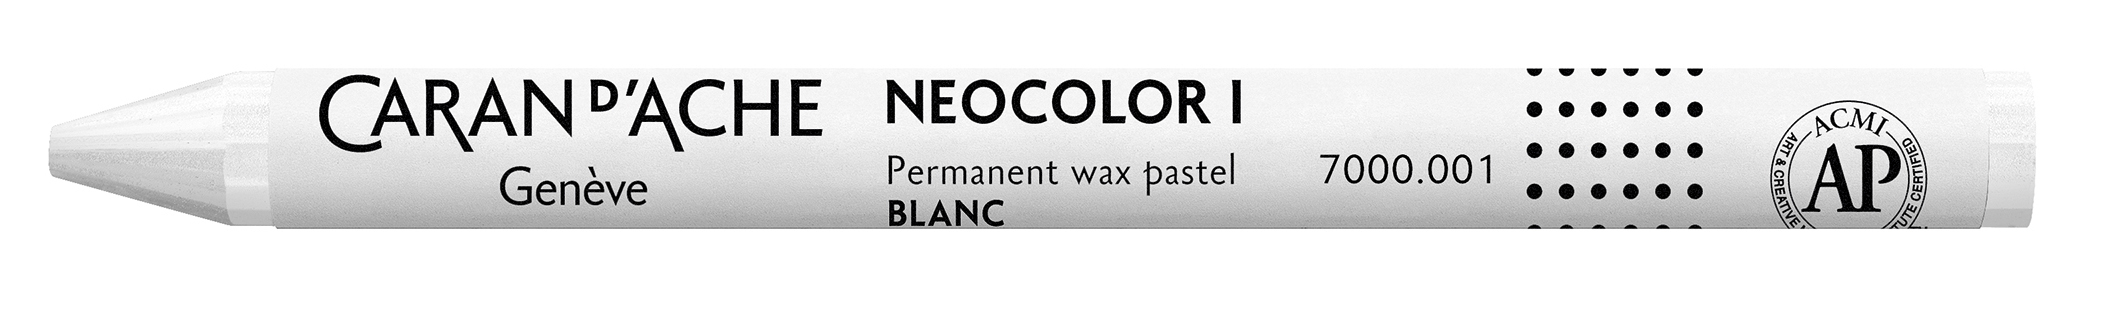 CARAN D'ACHE Crayons de cire Neocolor 1 7000.001 blanc